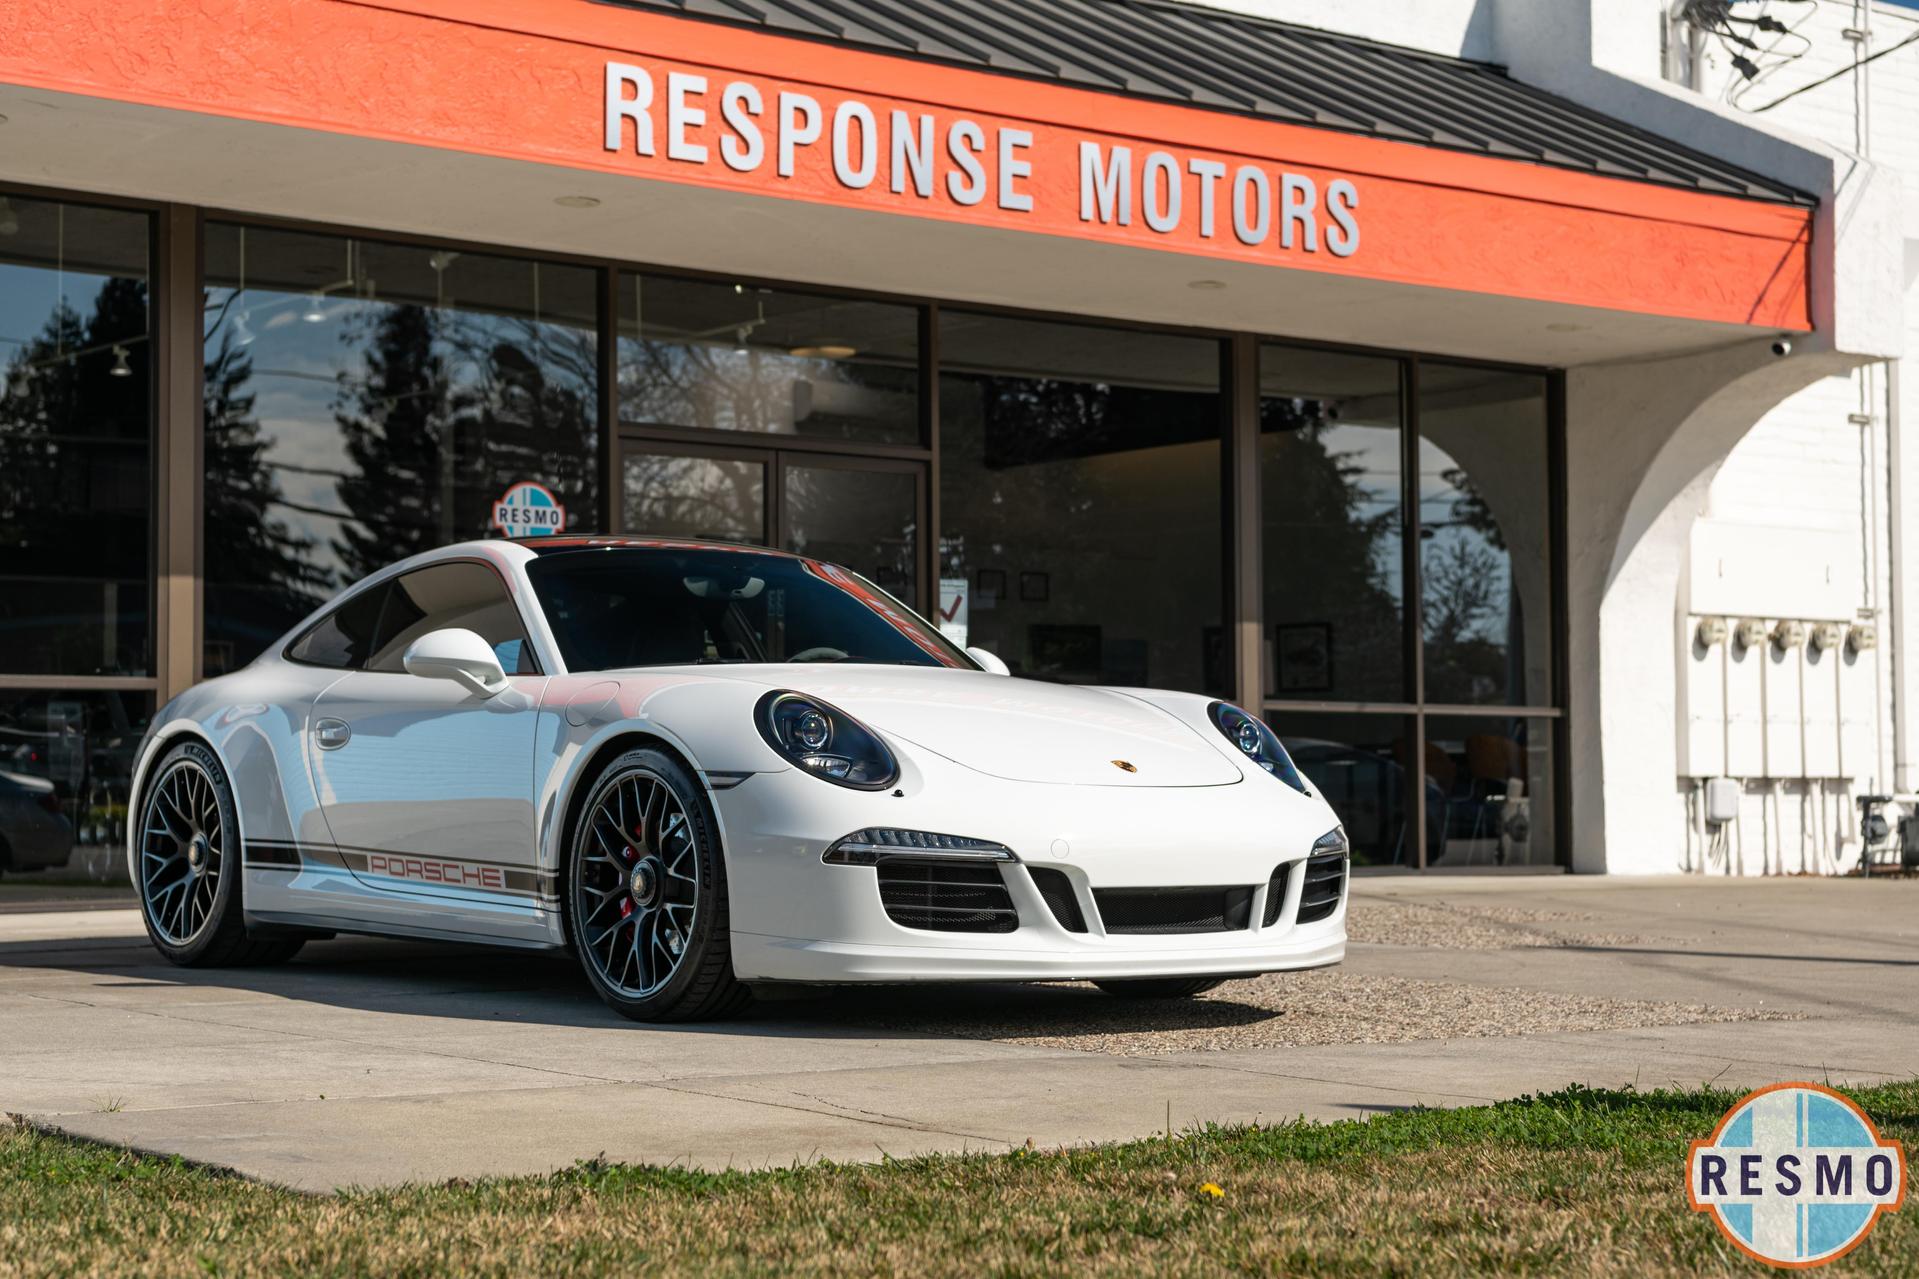 2015 Porsche Cayman GTS Coupe 2D - Response Motors